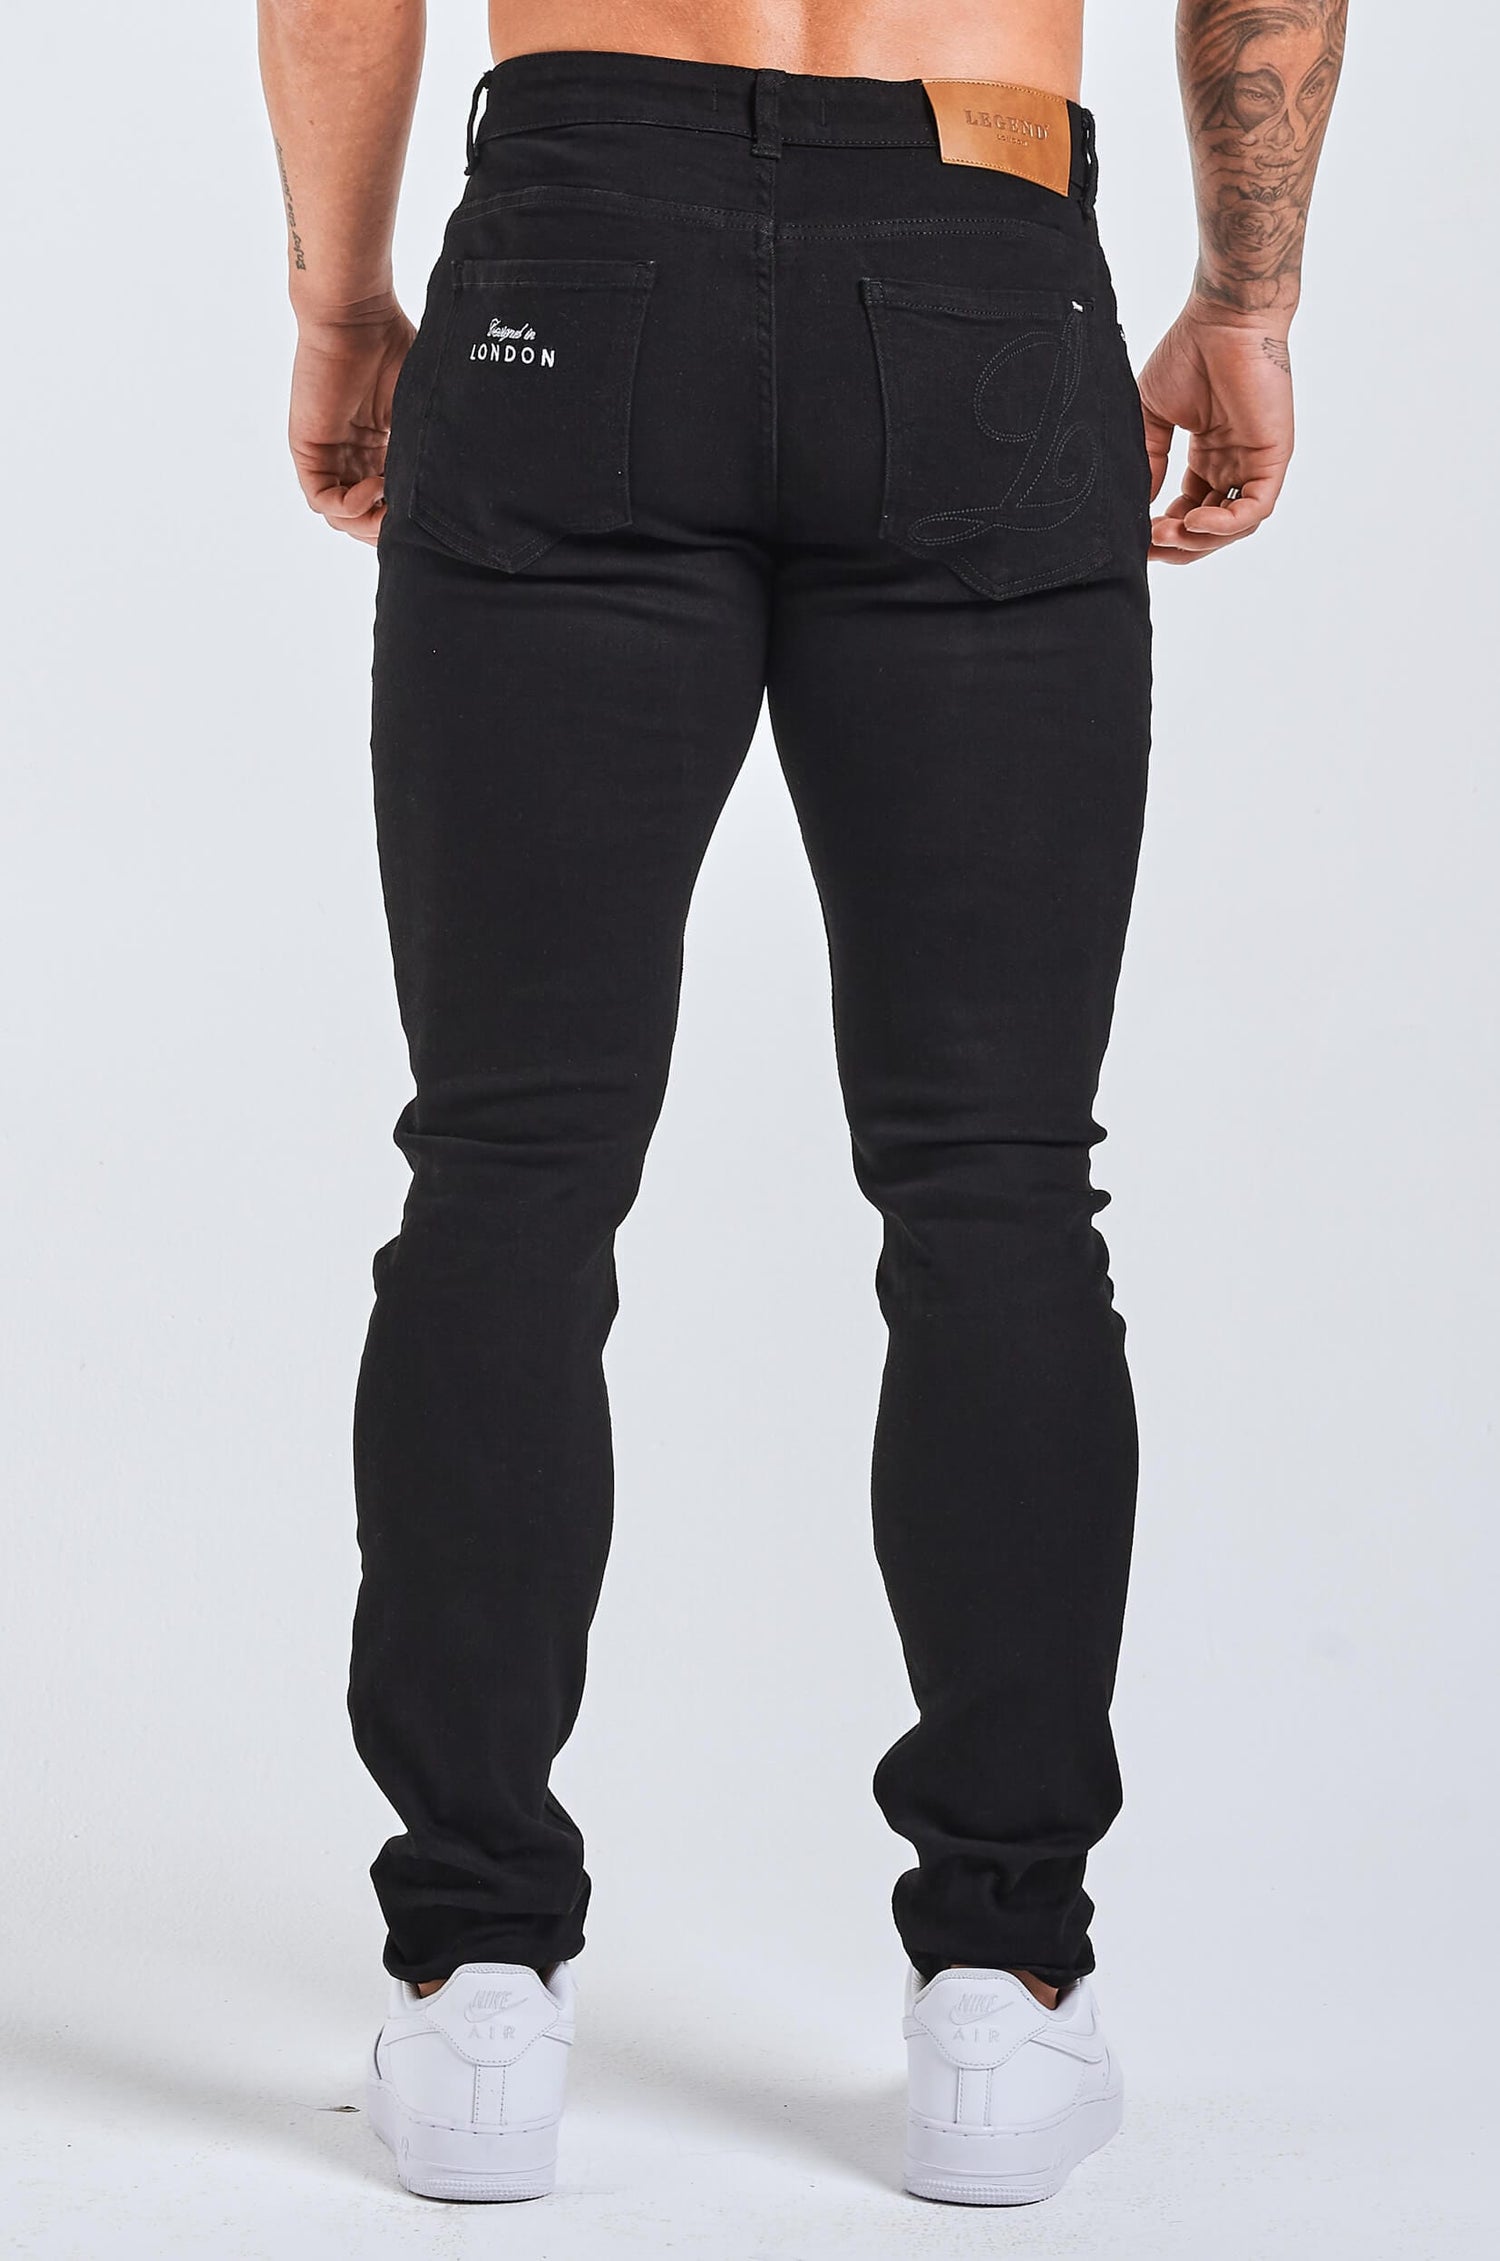 Legend London Jeans - slim 2.0 SLIM FIT JEANS 2.0 EMBROIDERED PRINTED DENIM - BLACK